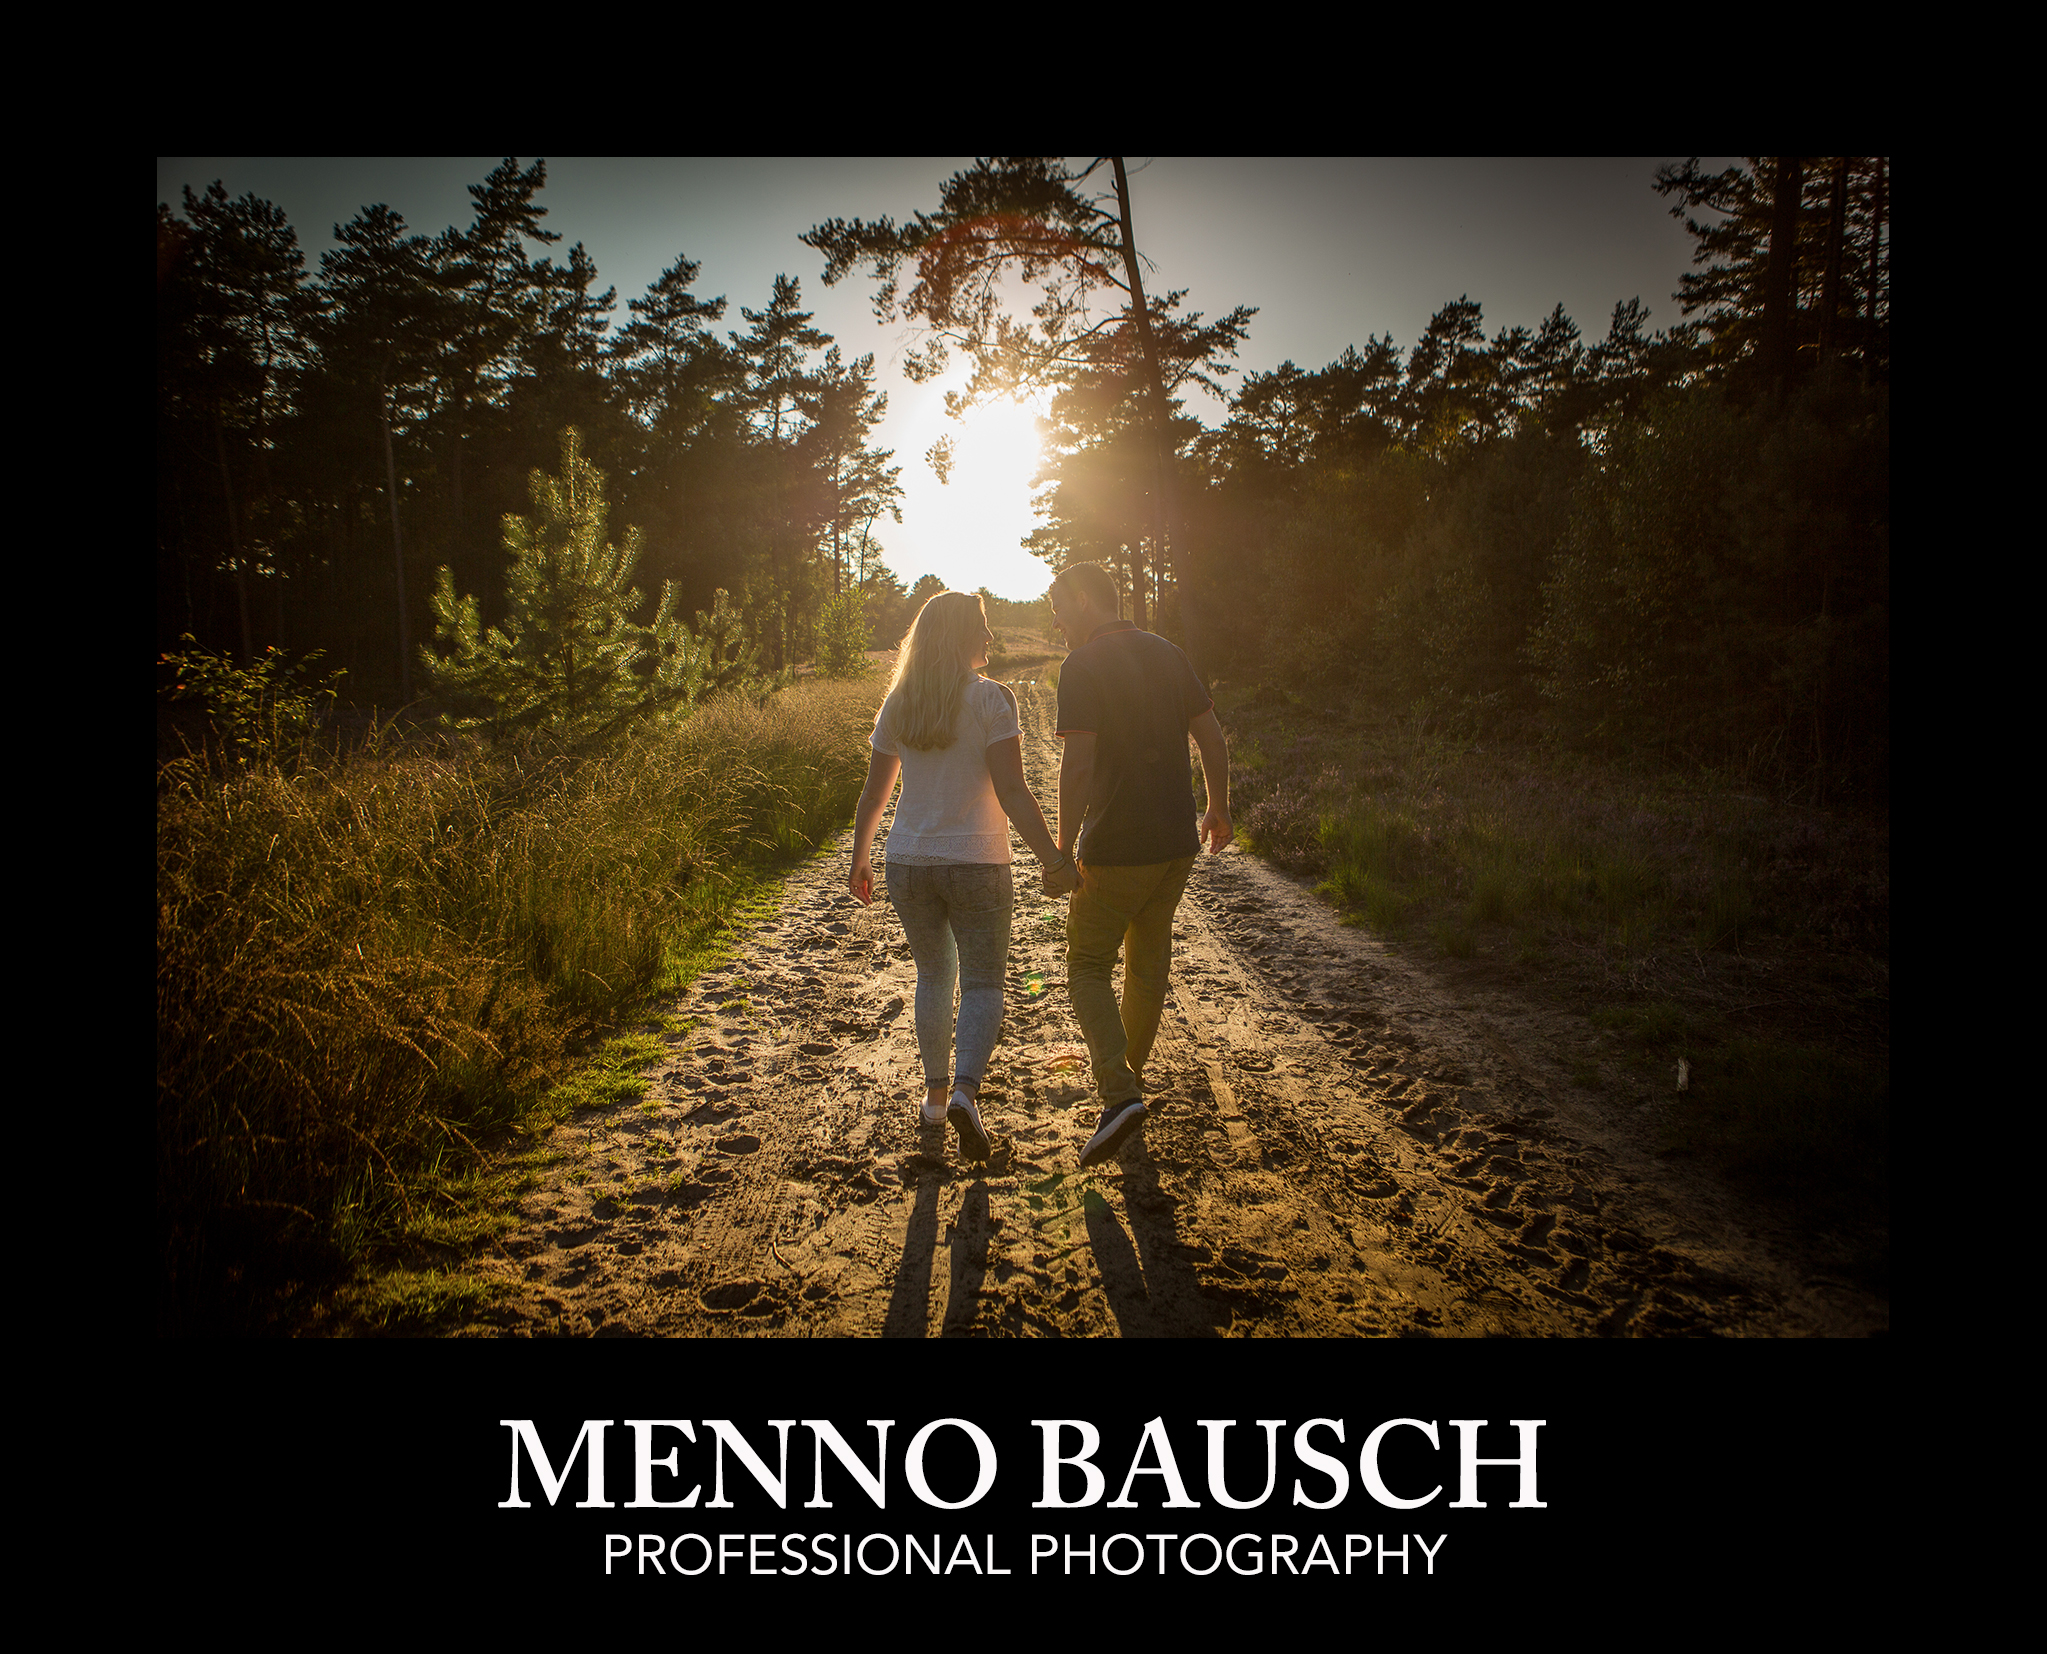 Copyright Menno Bausch Fotografie